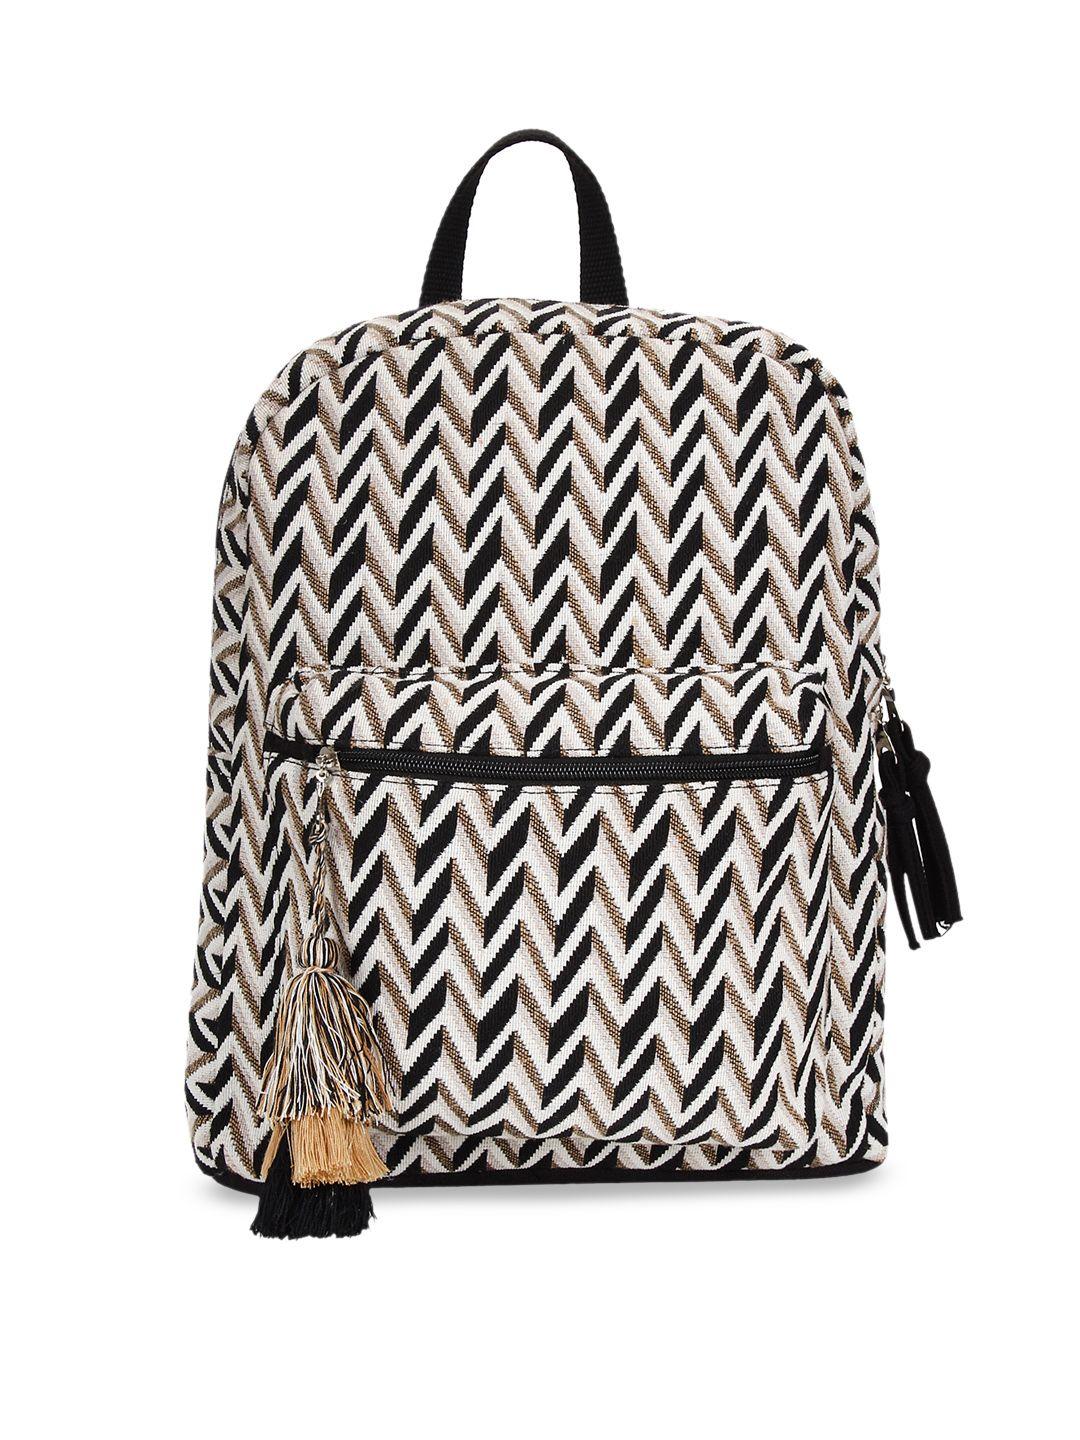 anekaant women beige & black geometric printed backpack